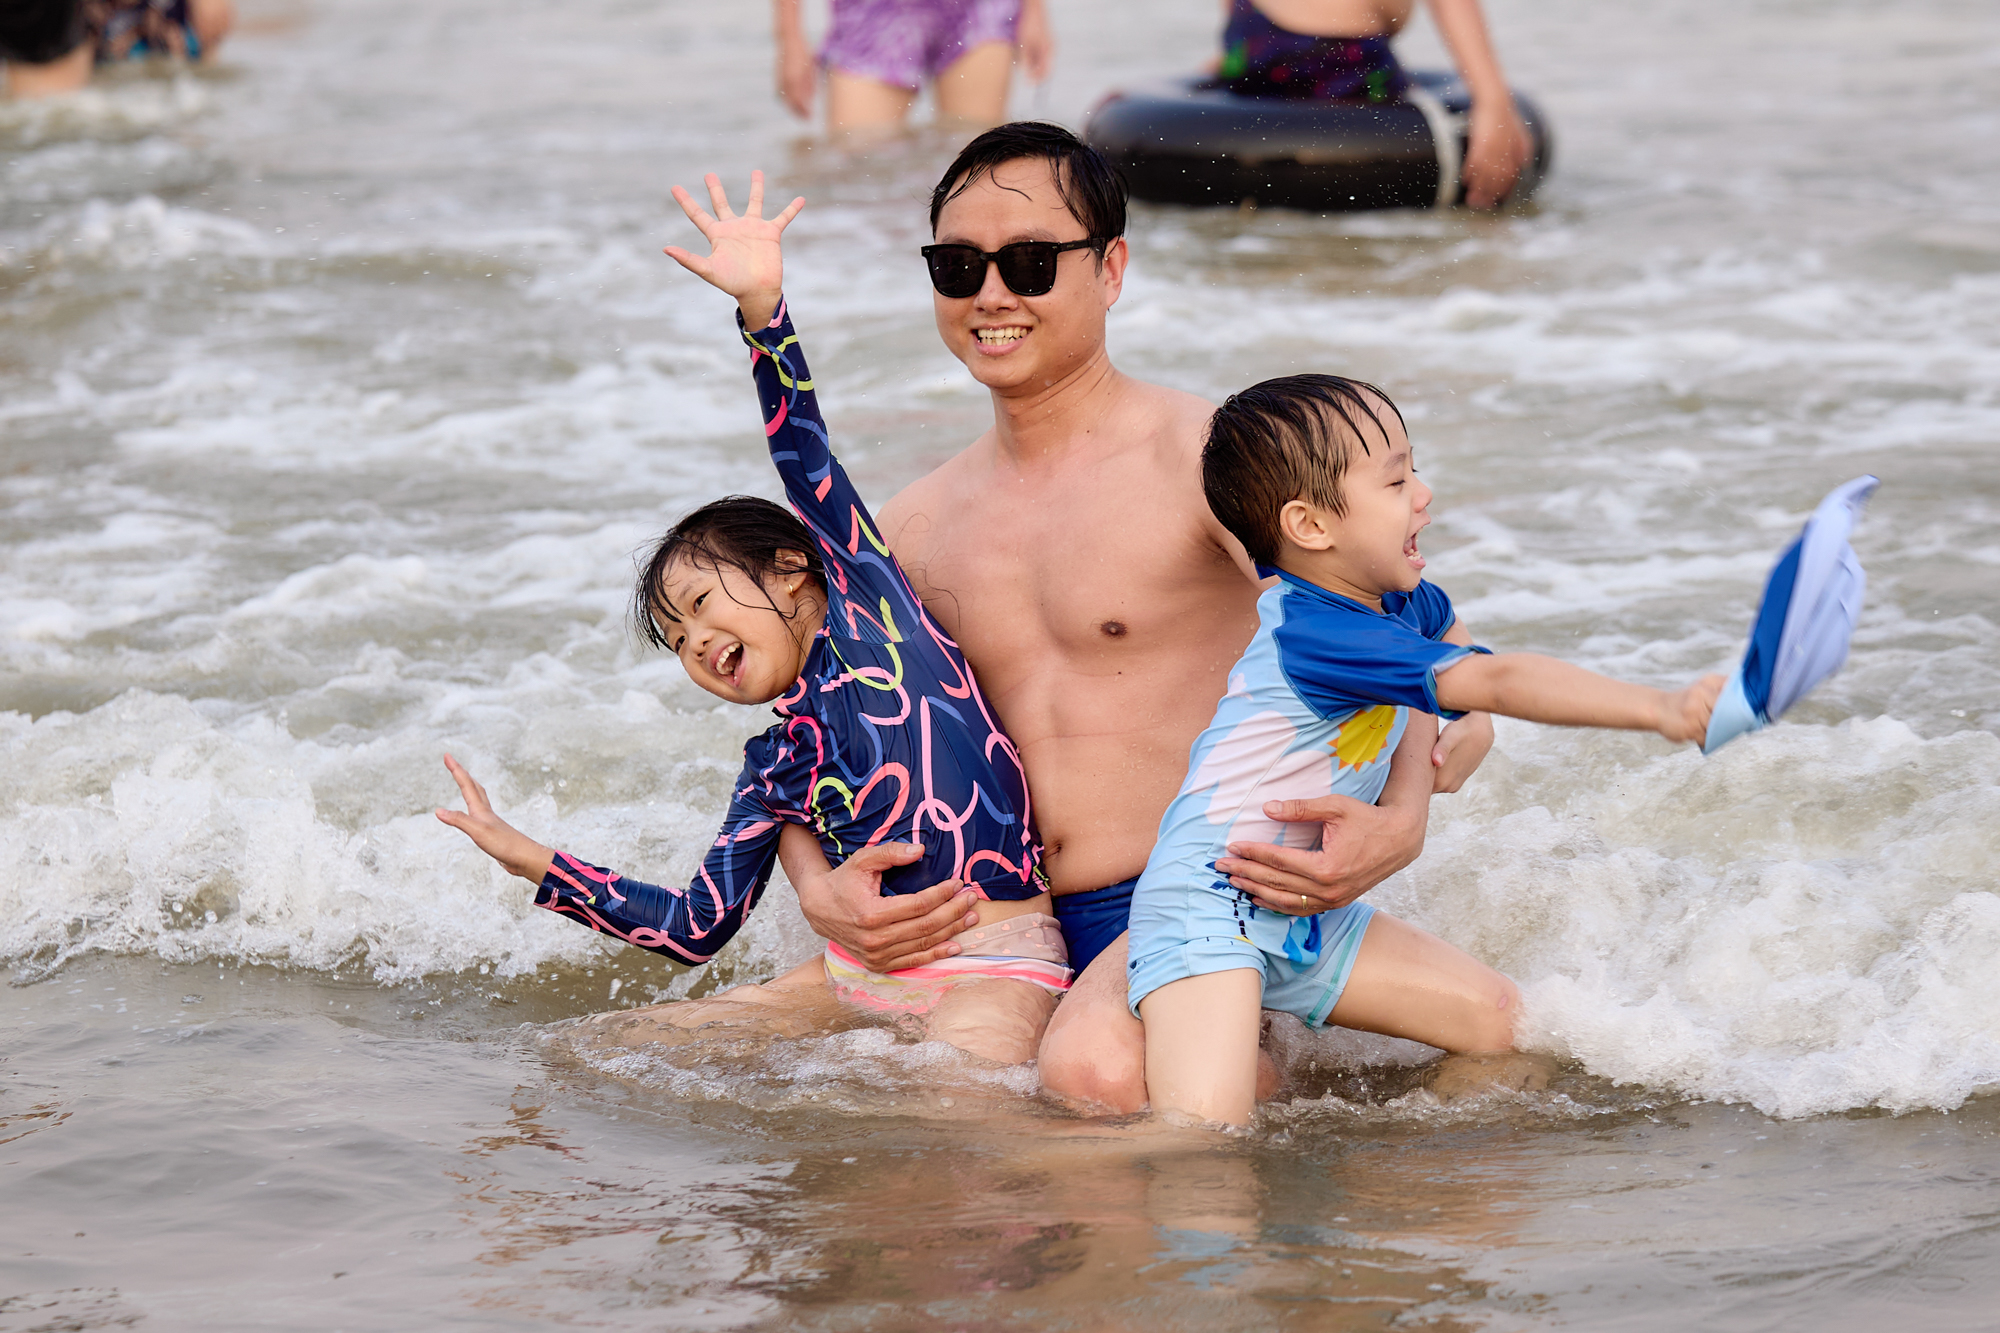 Bãi biển Sầm Sơn ken đặc người đổ về giải nhiệt, du khách nói 3 lý do quyết lựa chọn nơi này- Ảnh 6.